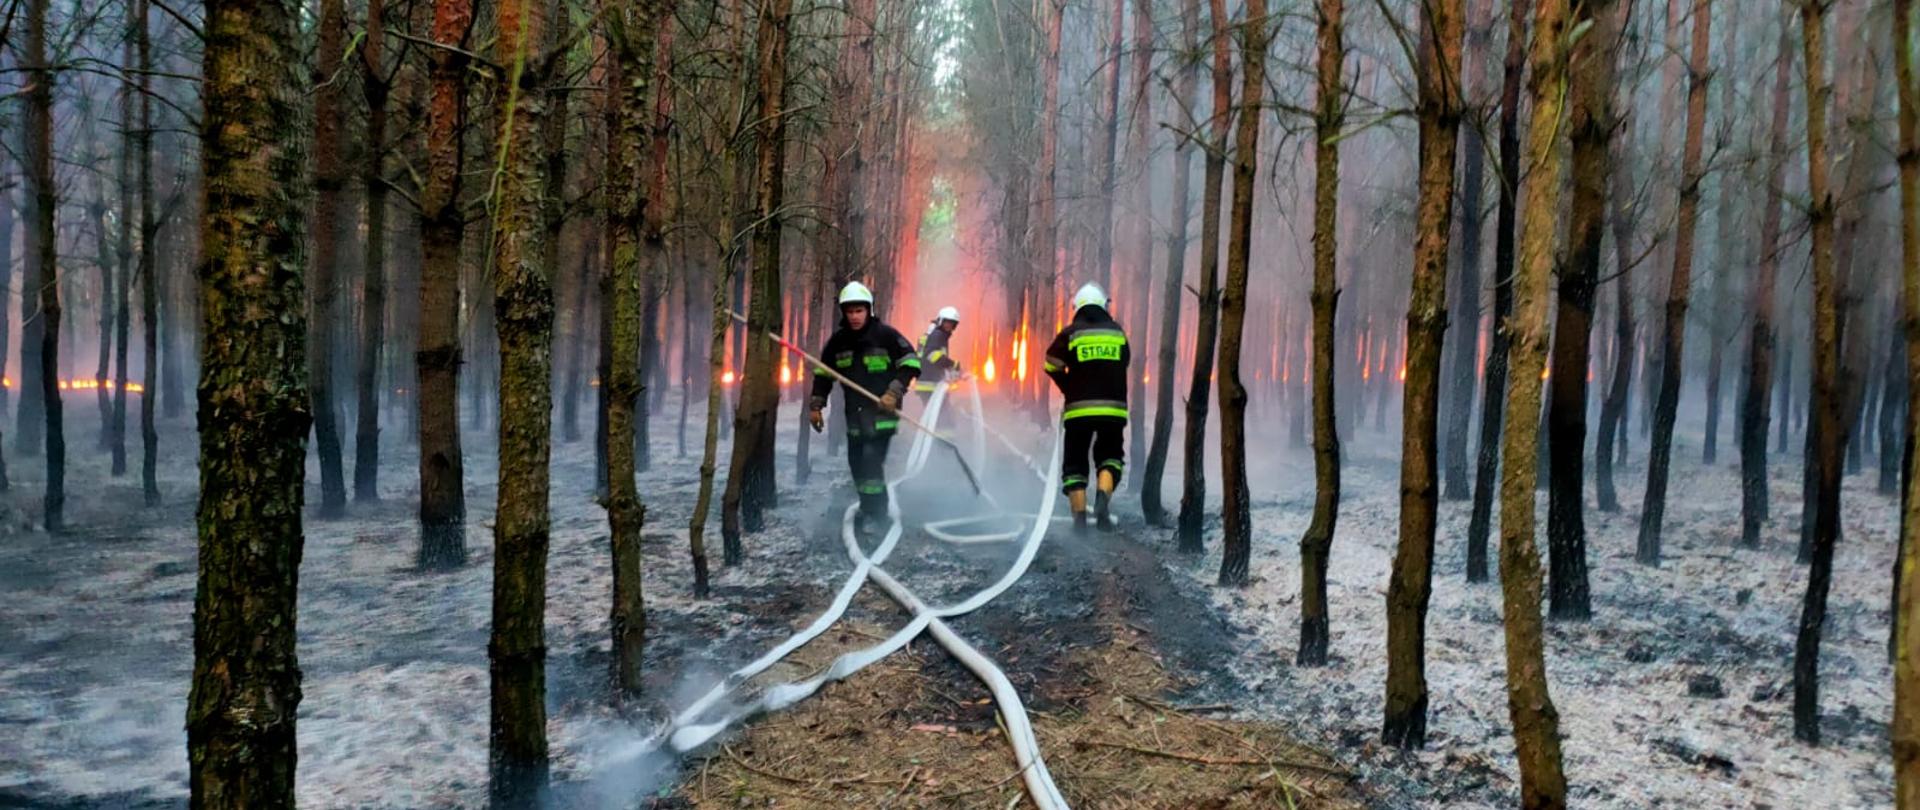 strażacy gaszą pożar lasu w oddali widać płomienie